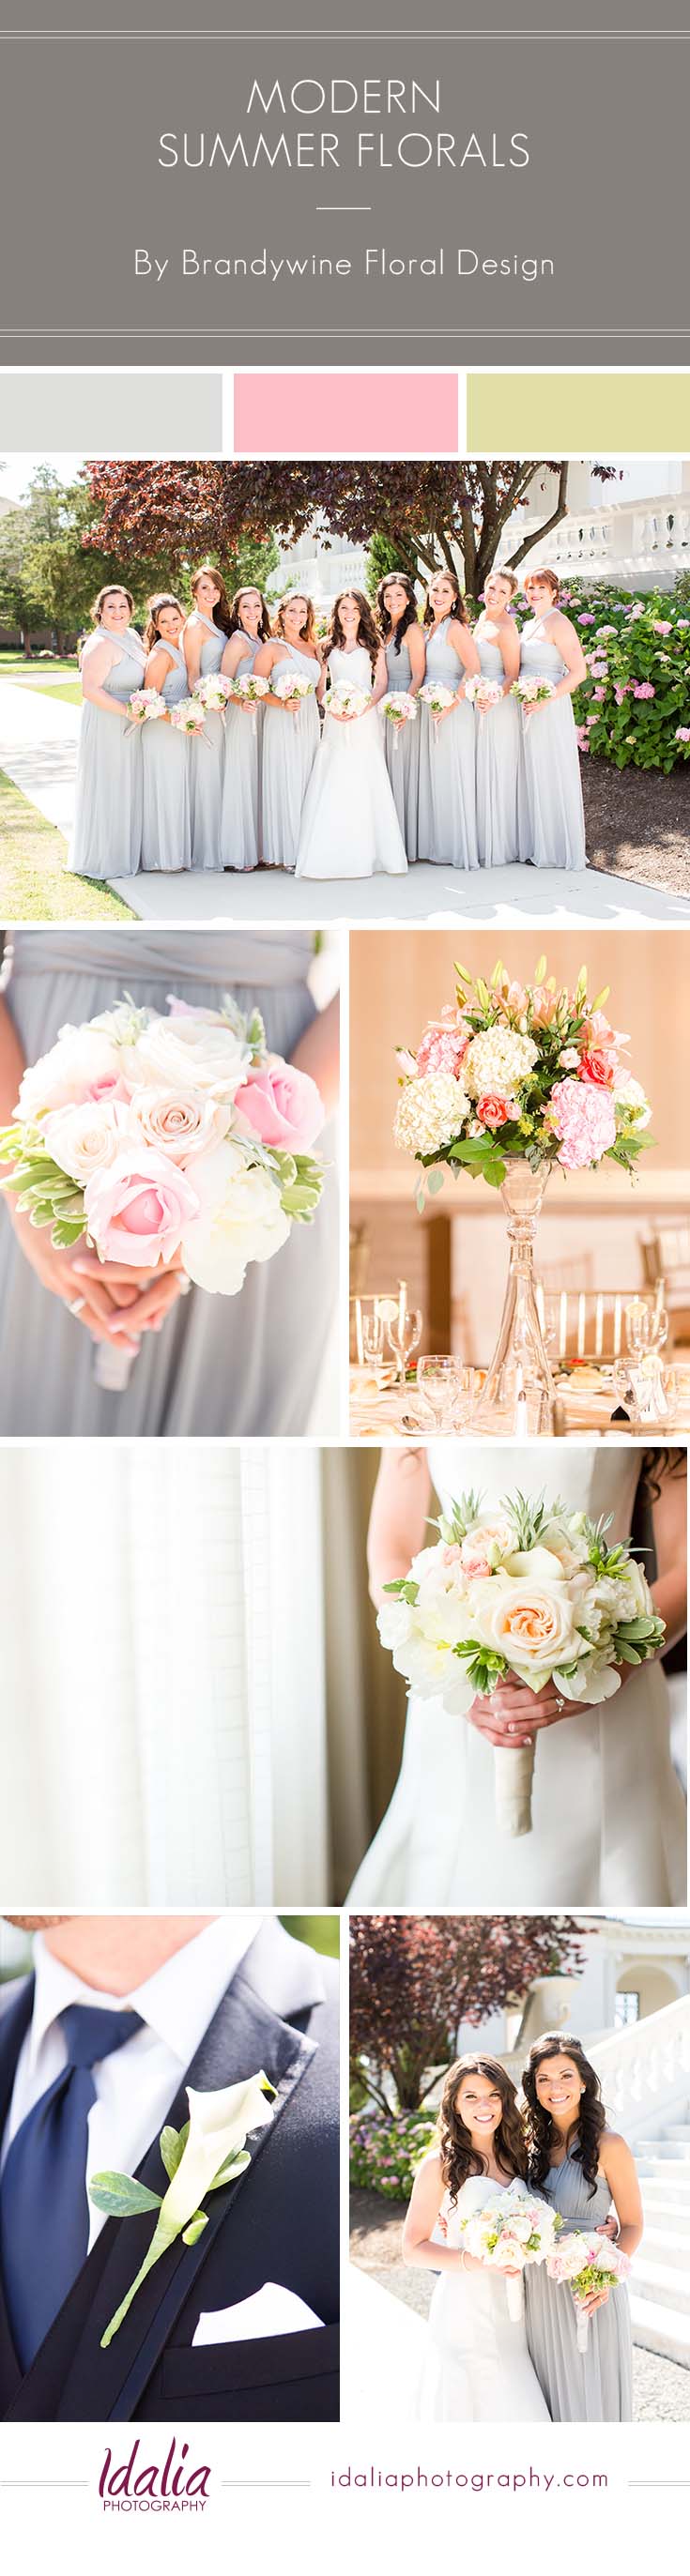 Florals for a Modern NJ Wedding by Brandywine Floral Design